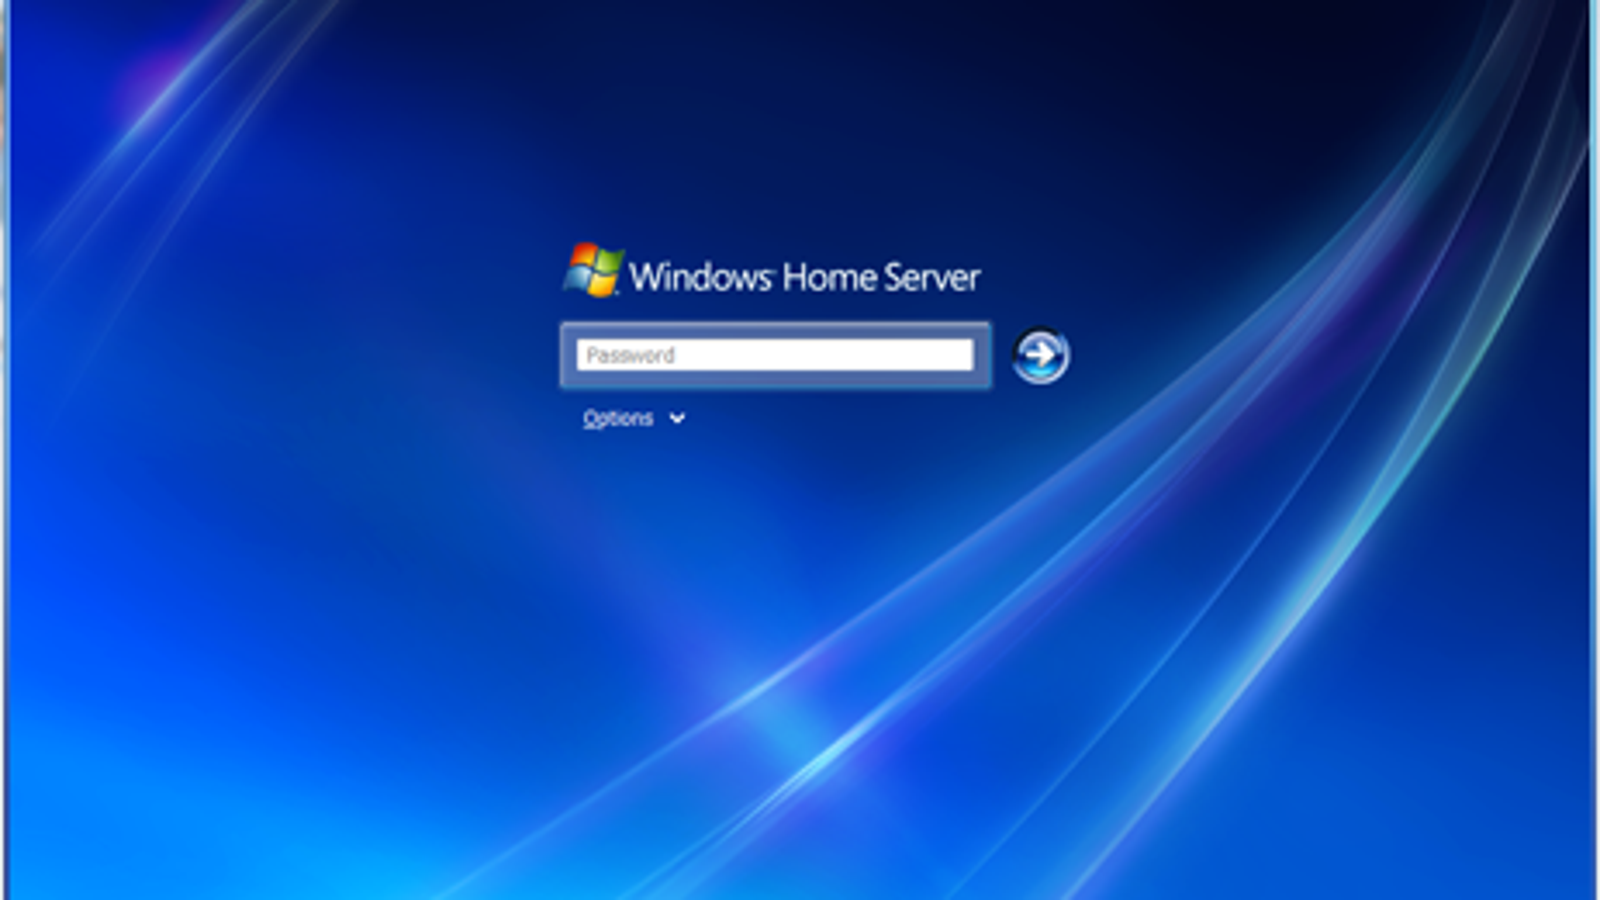 Windows Home Server Review